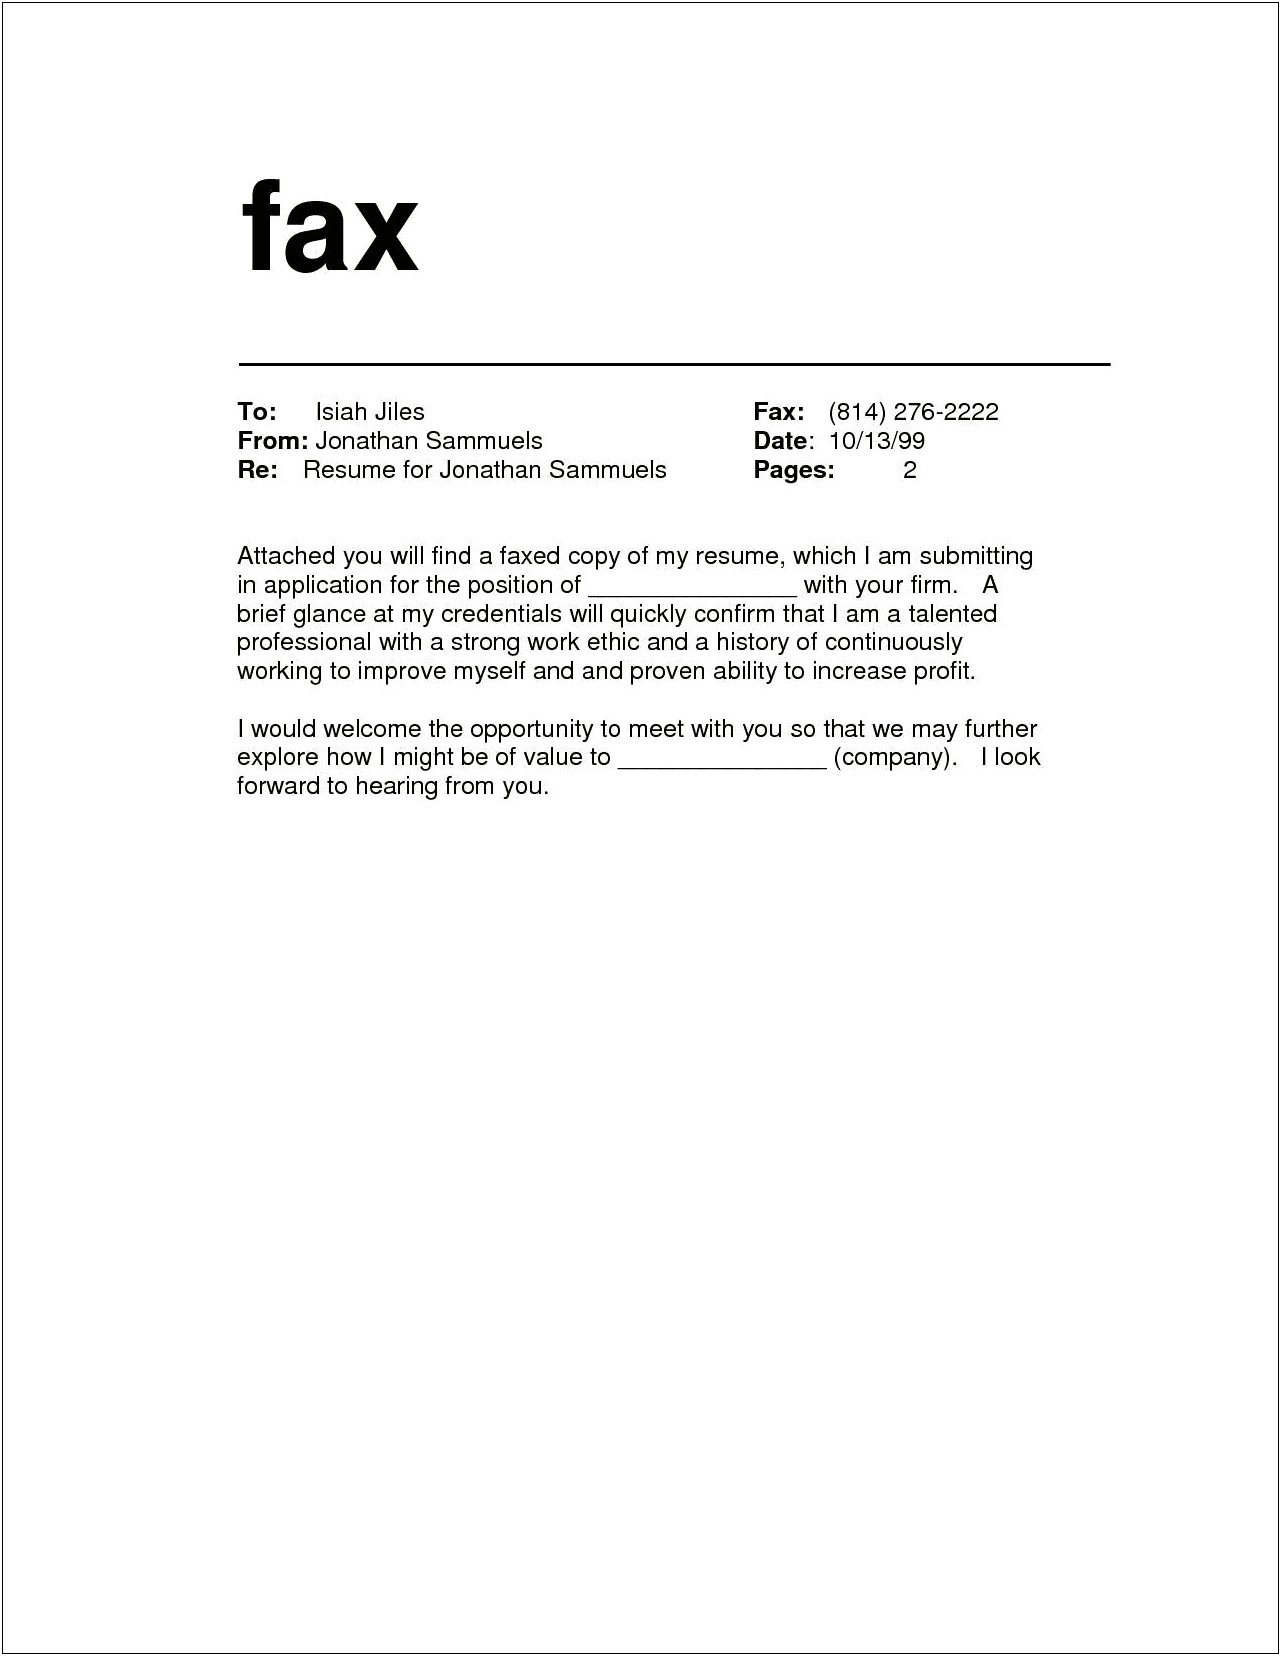 Fax Cover Letter For Sending Resume